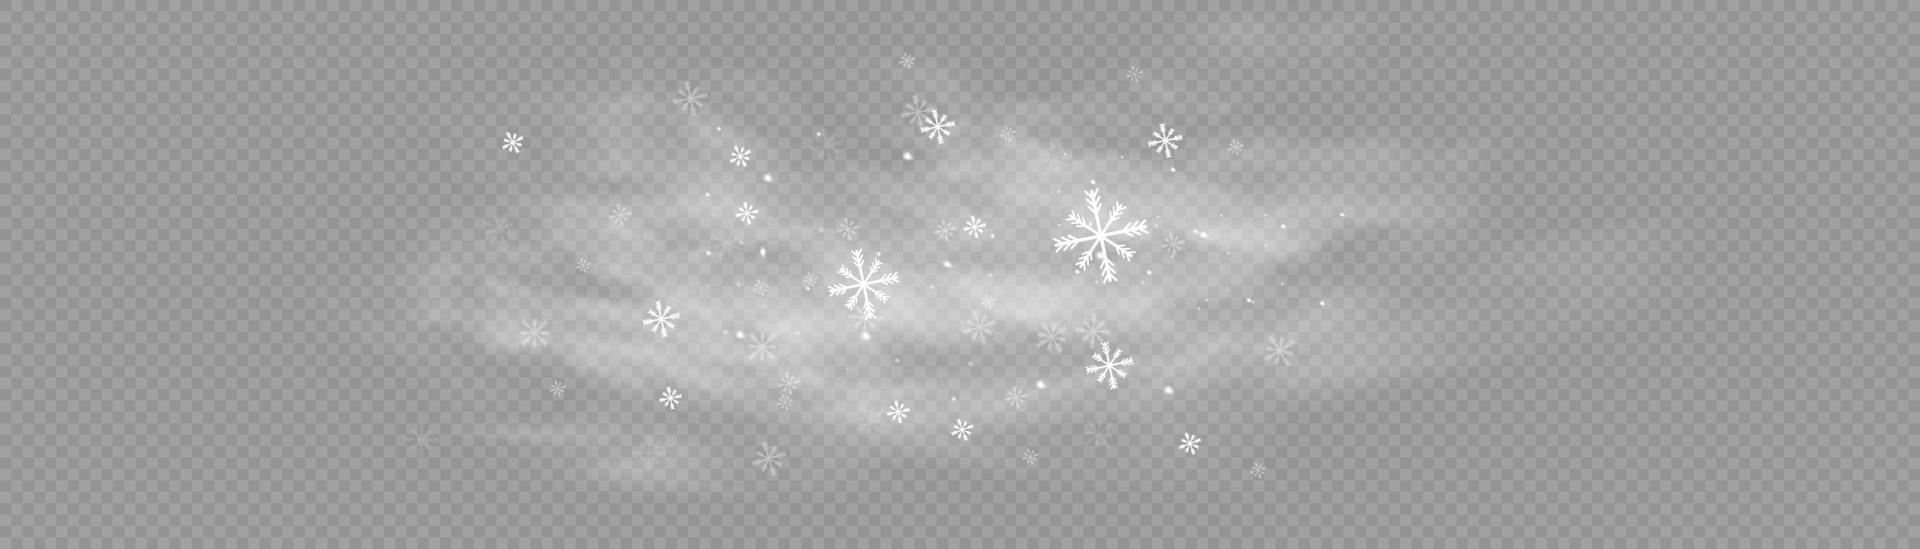 neve e vento. ilustração de element.vector decorativo gradiente branco. inverno e neve com neblina. vento e neblina. vetor